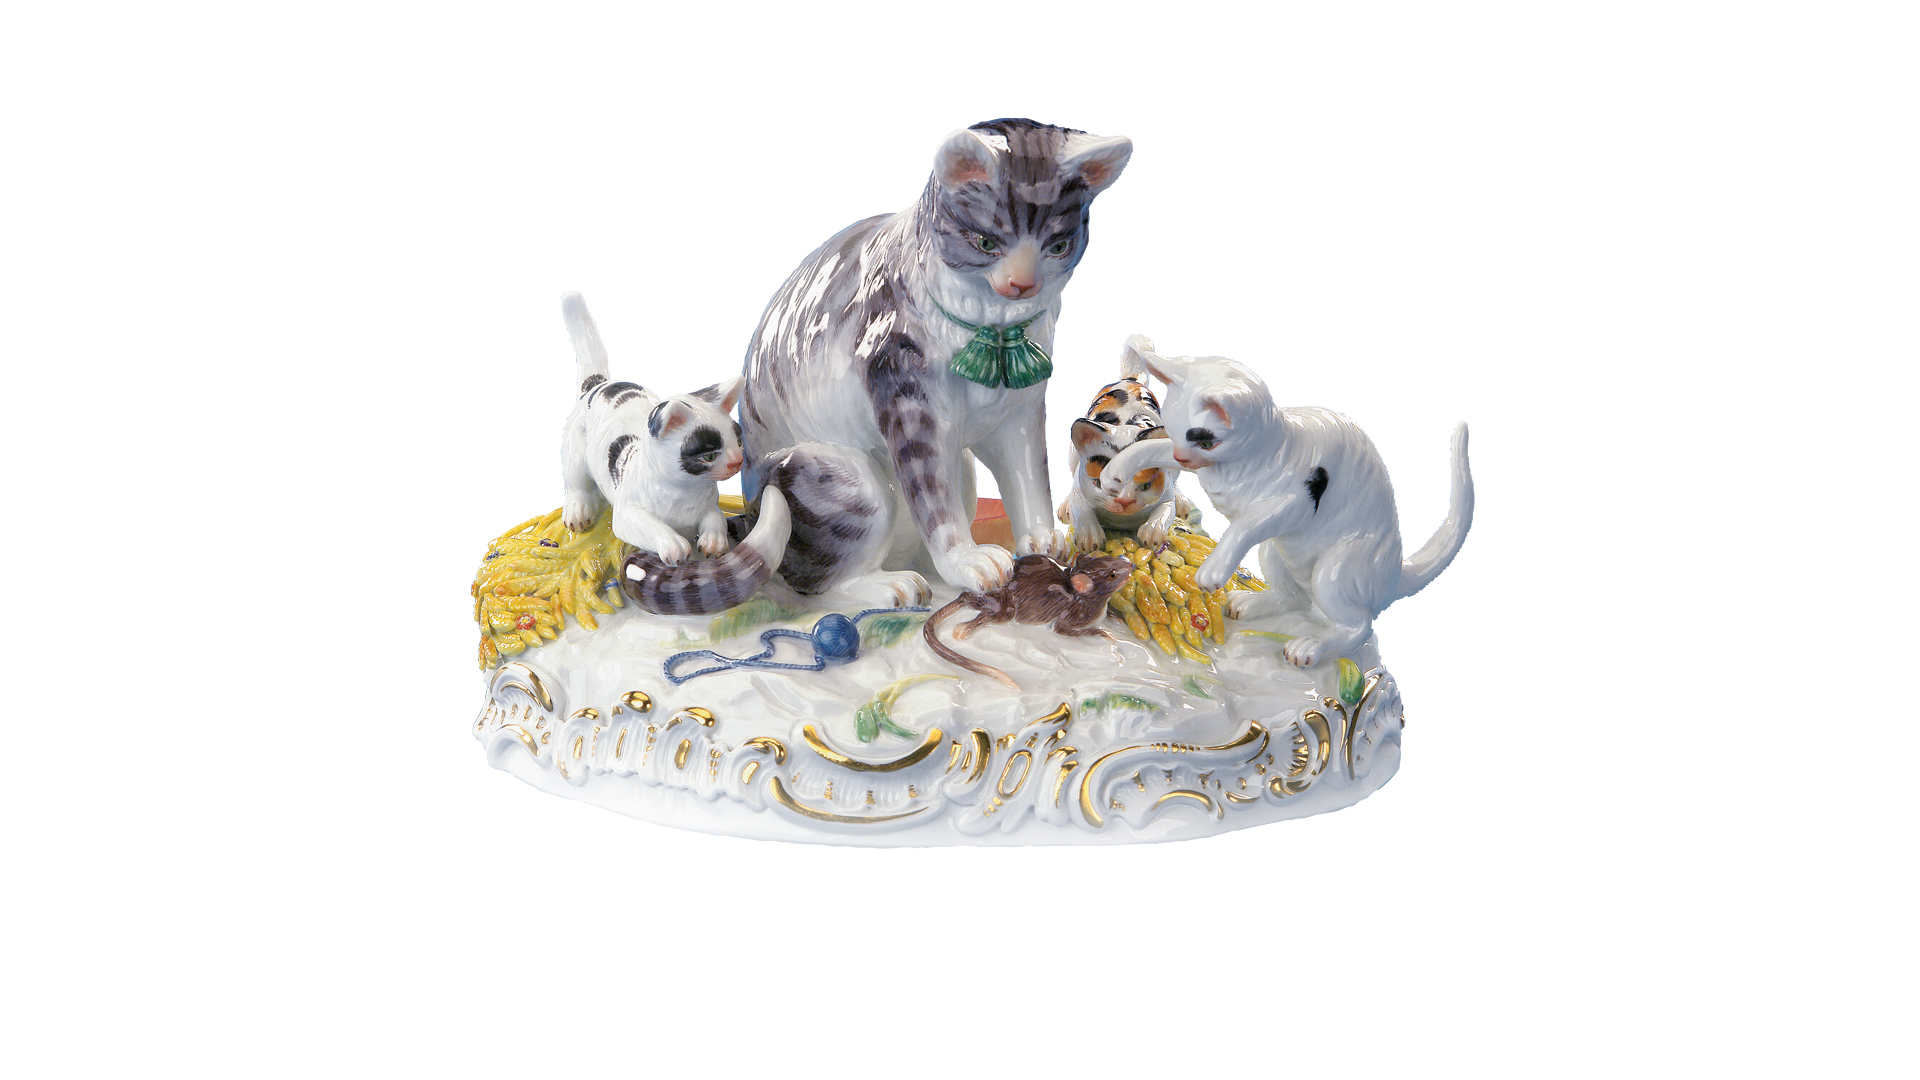 Фигурка Meissen Кошка и котята, играющие с мышкой 13 см, фарфор